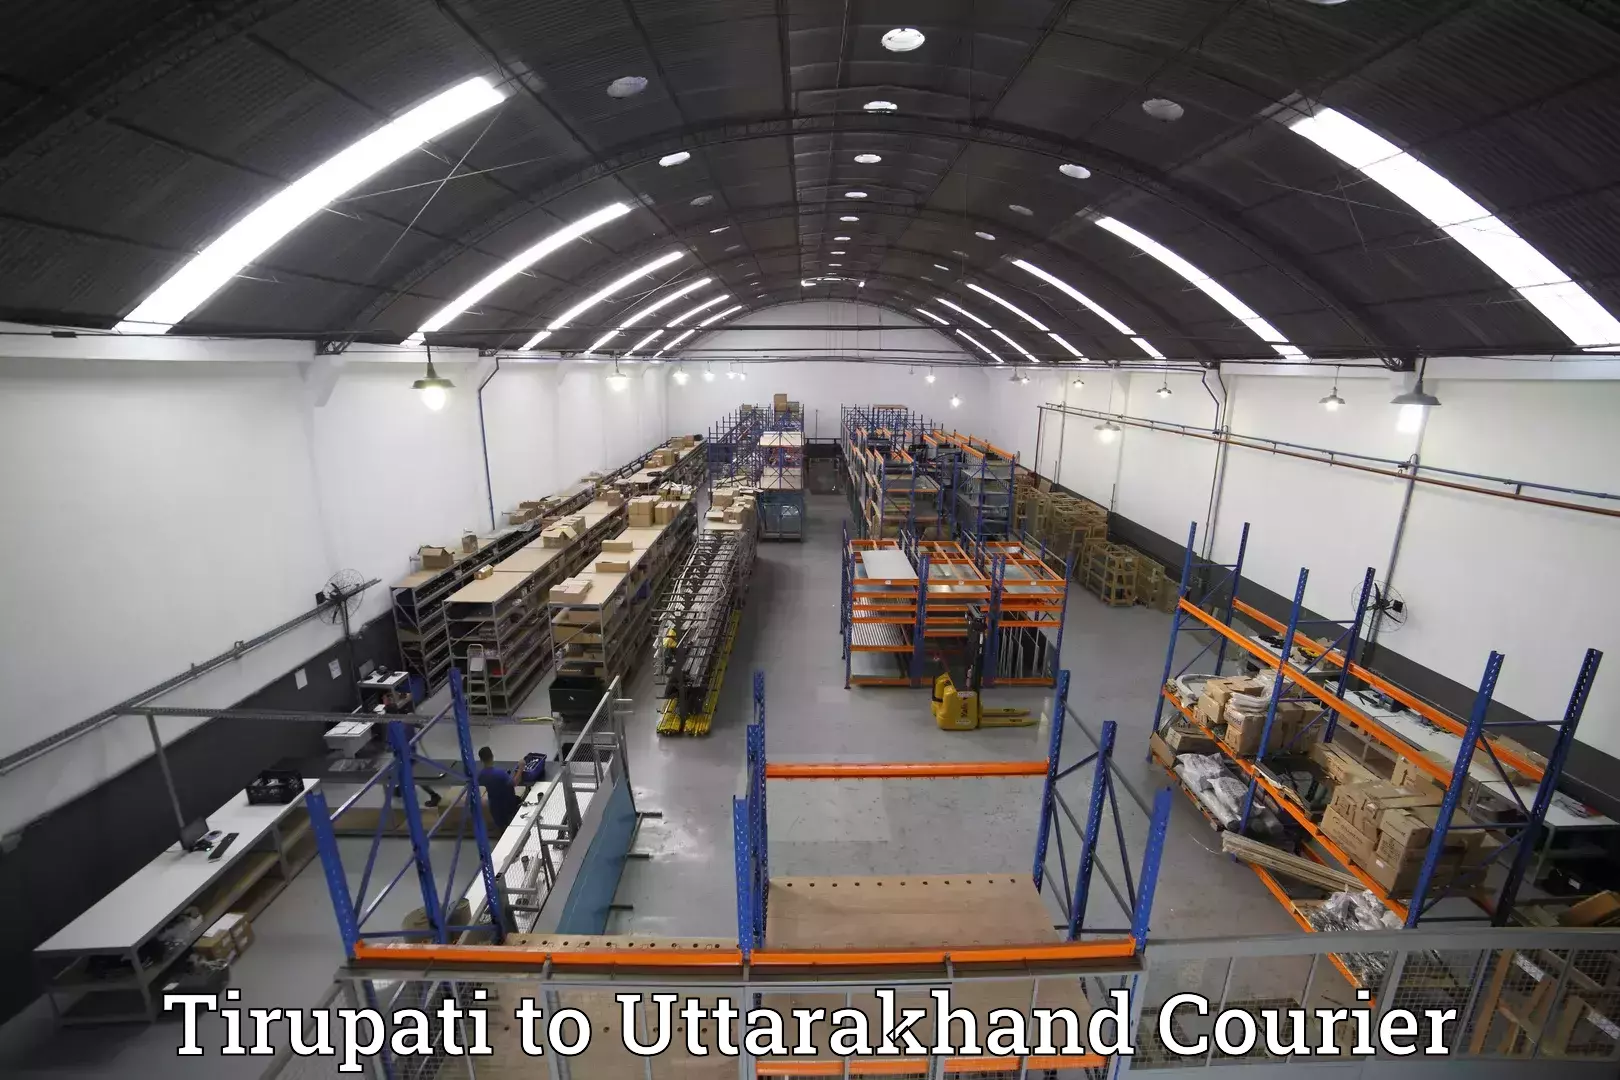 Baggage delivery technology Tirupati to Karnaprayag